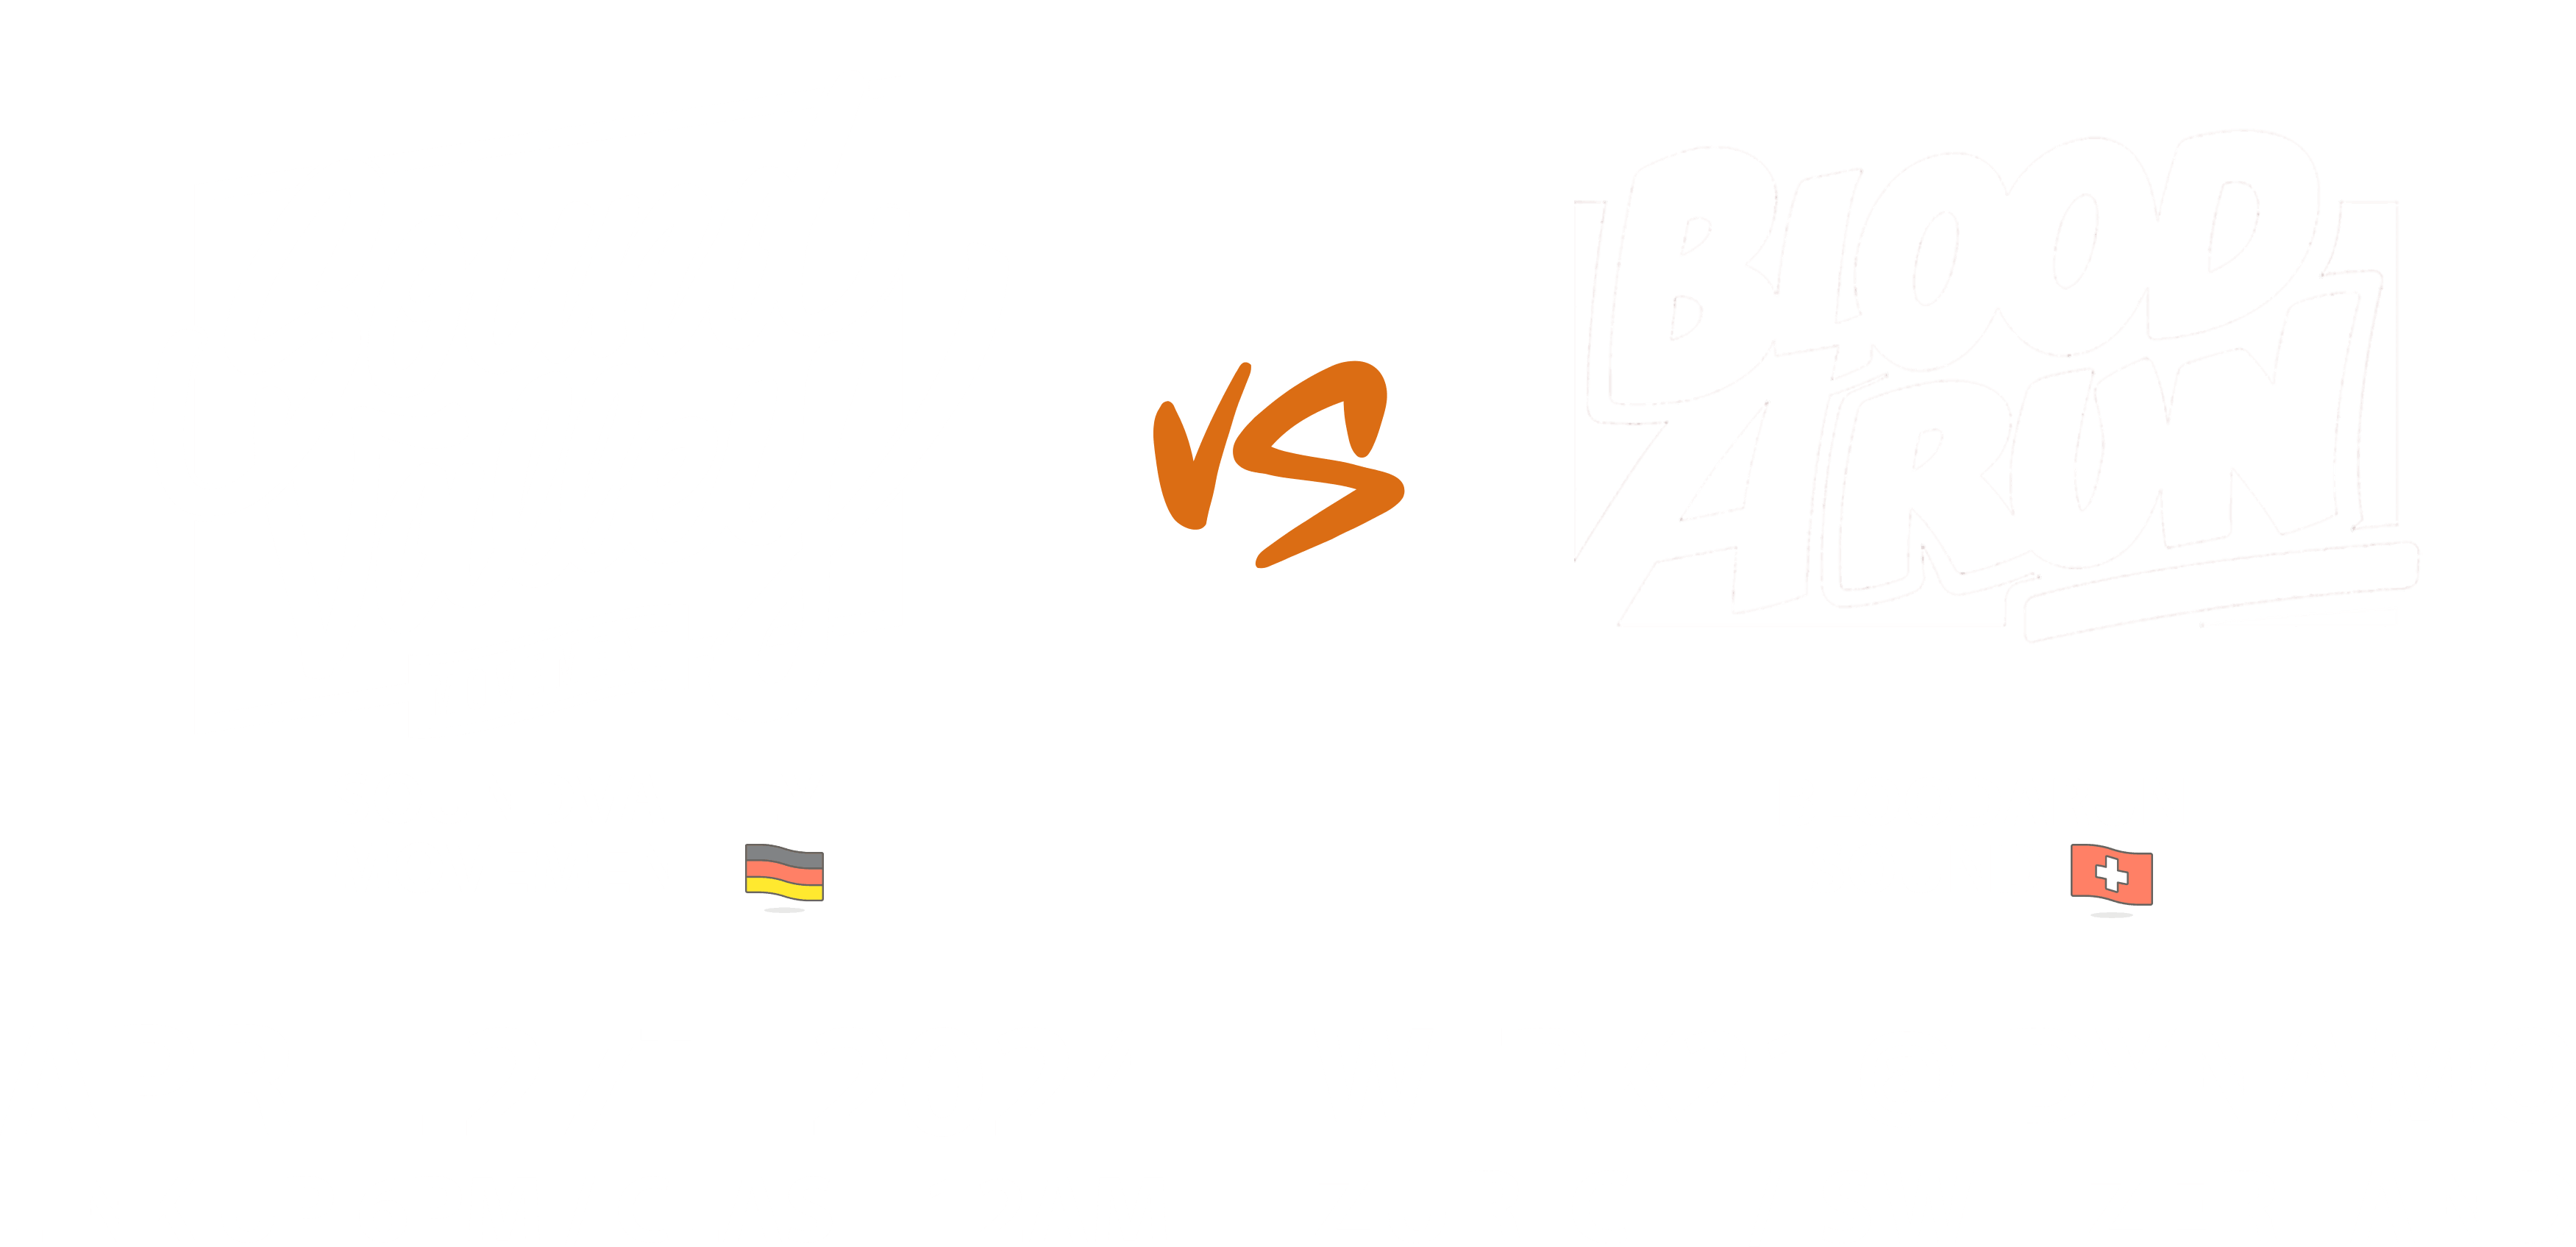 27th April 2024 in Dynamo Werk21 - Link-up 6pm / Clash 12pm - Zurich, Switzerland 